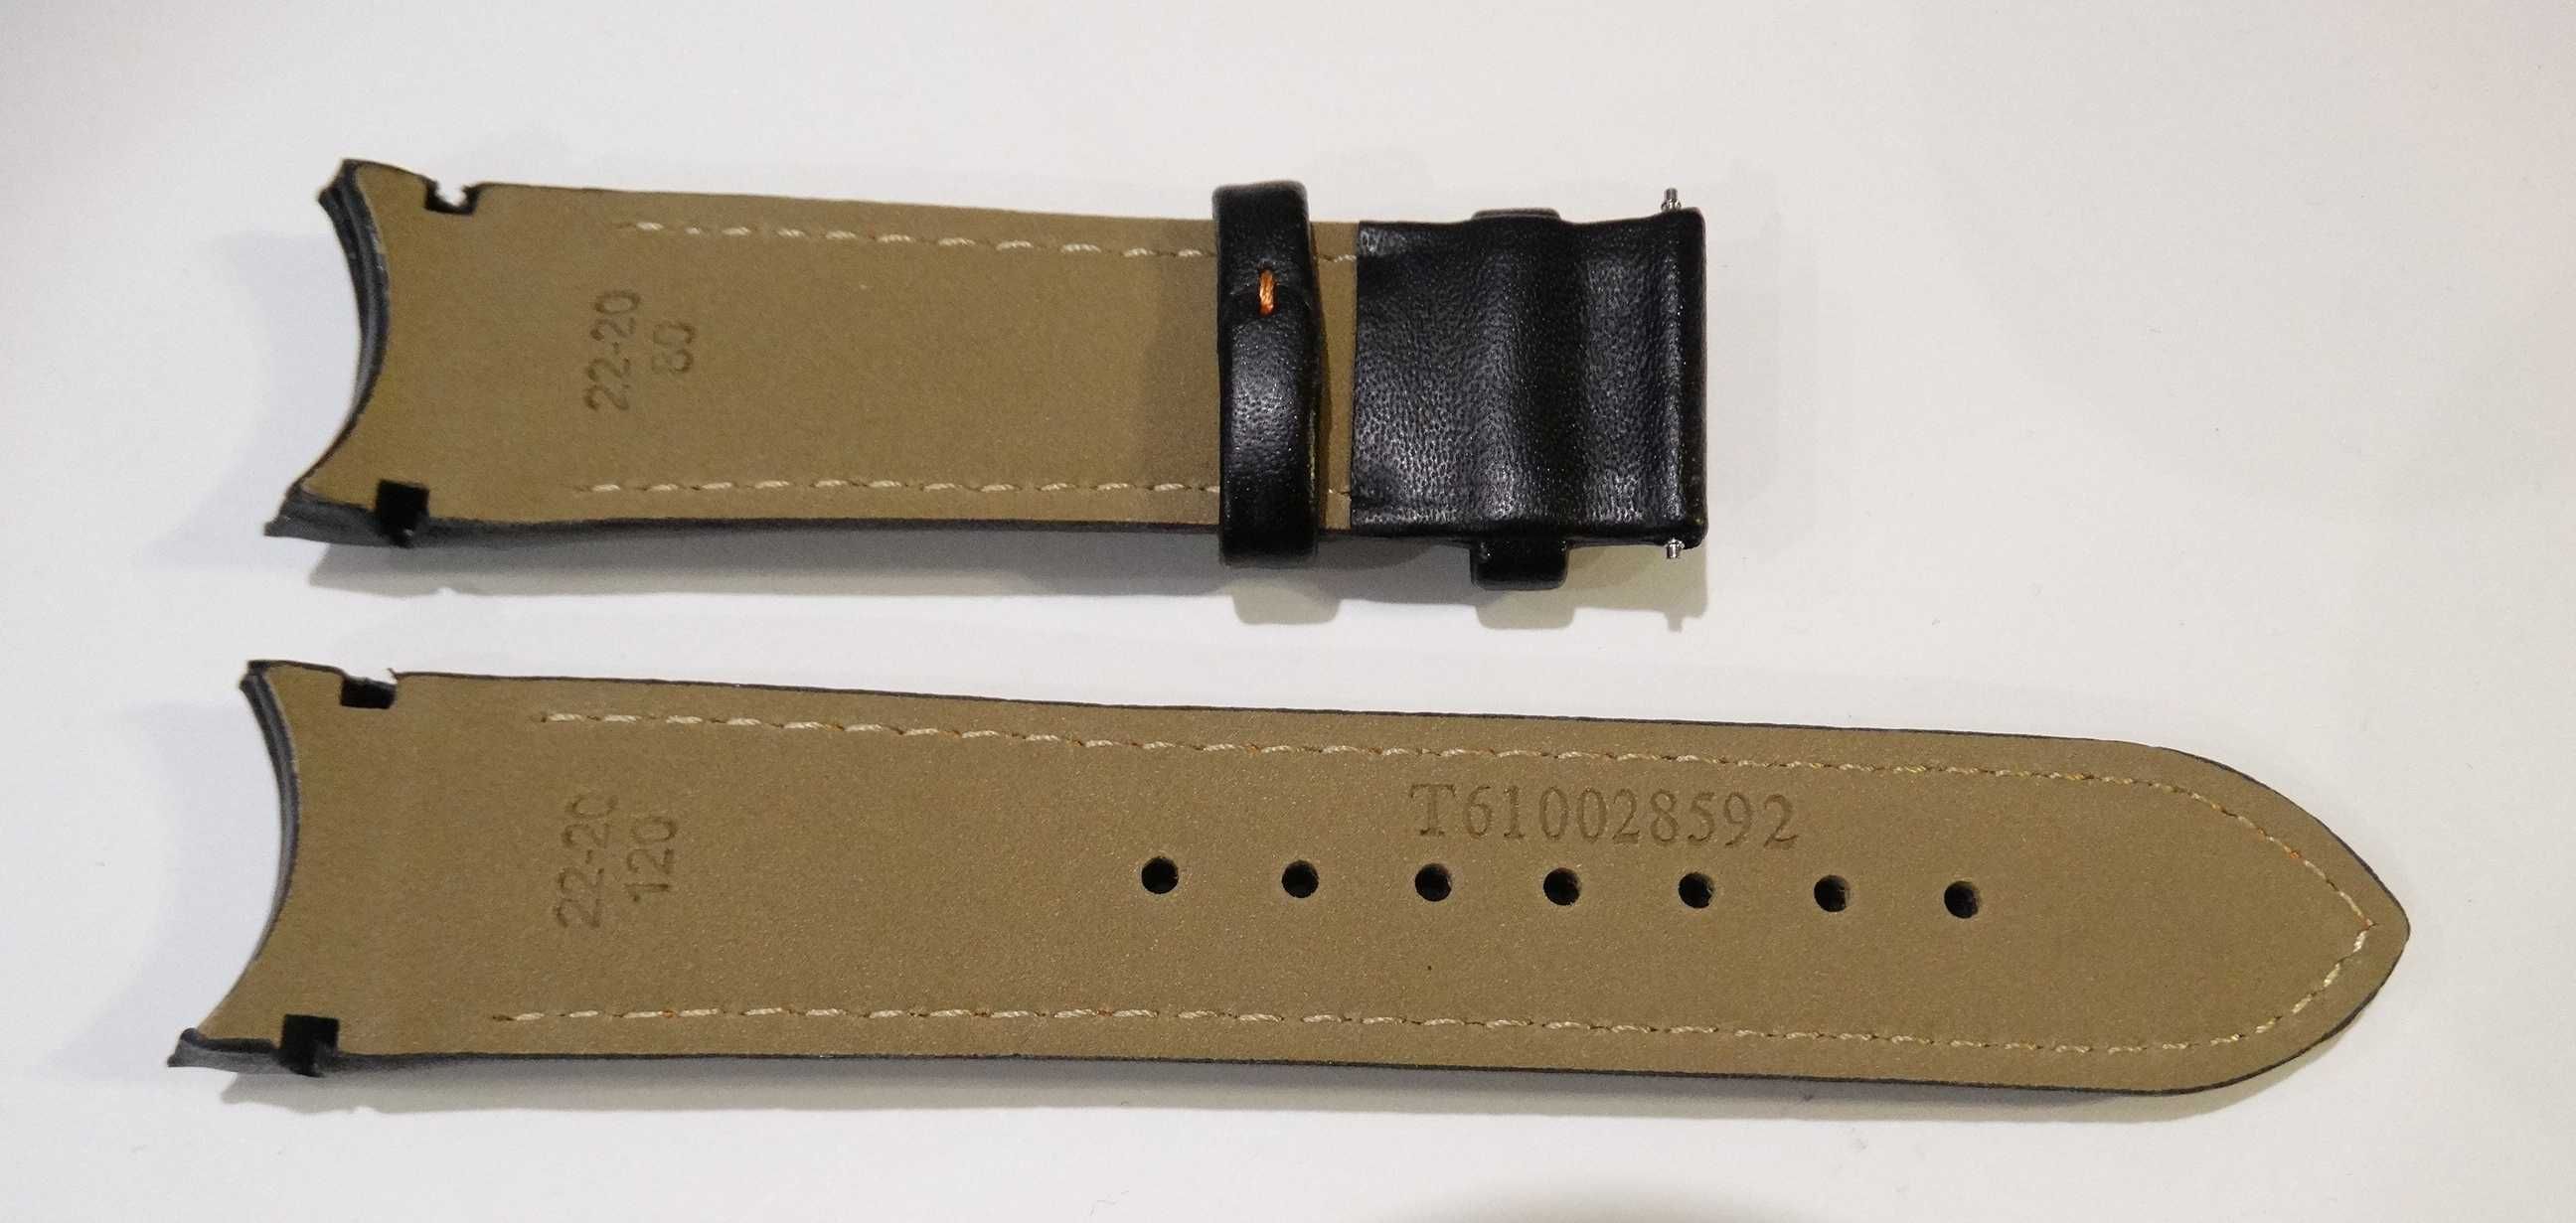 Skórzany pasek do zegarka Tissot Couturier 22mm czarny brazowy